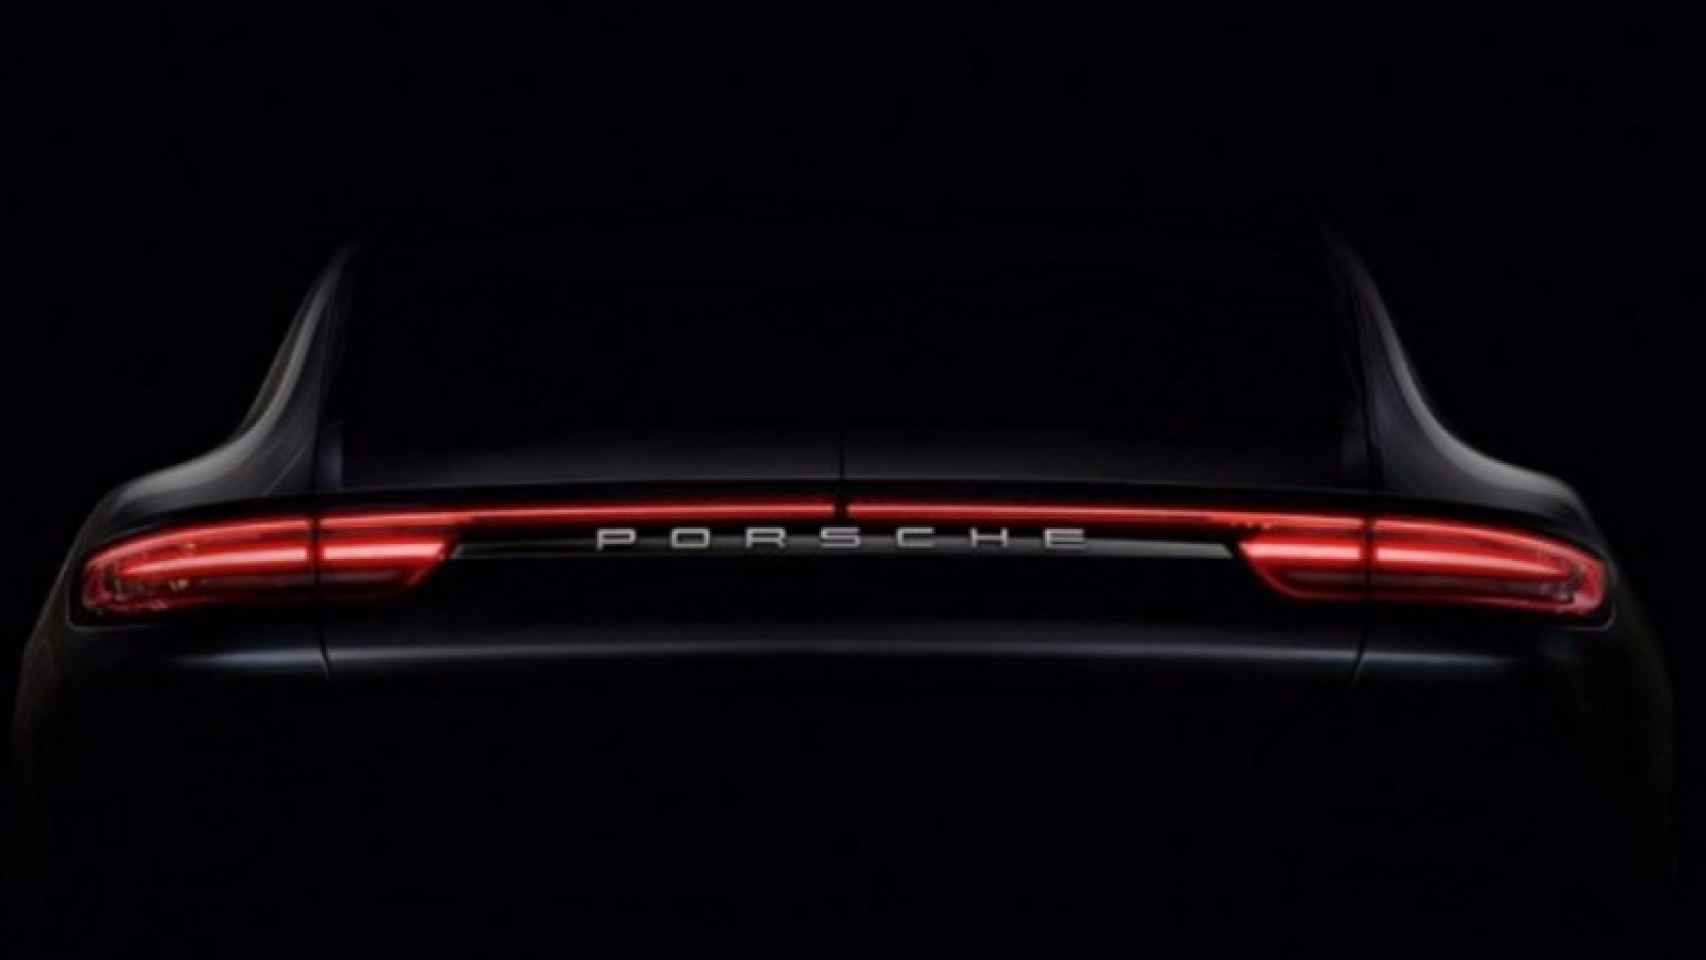 El nuevo Porsche Panamera, que aparece en la imagen, ha generado muchas expectativas.